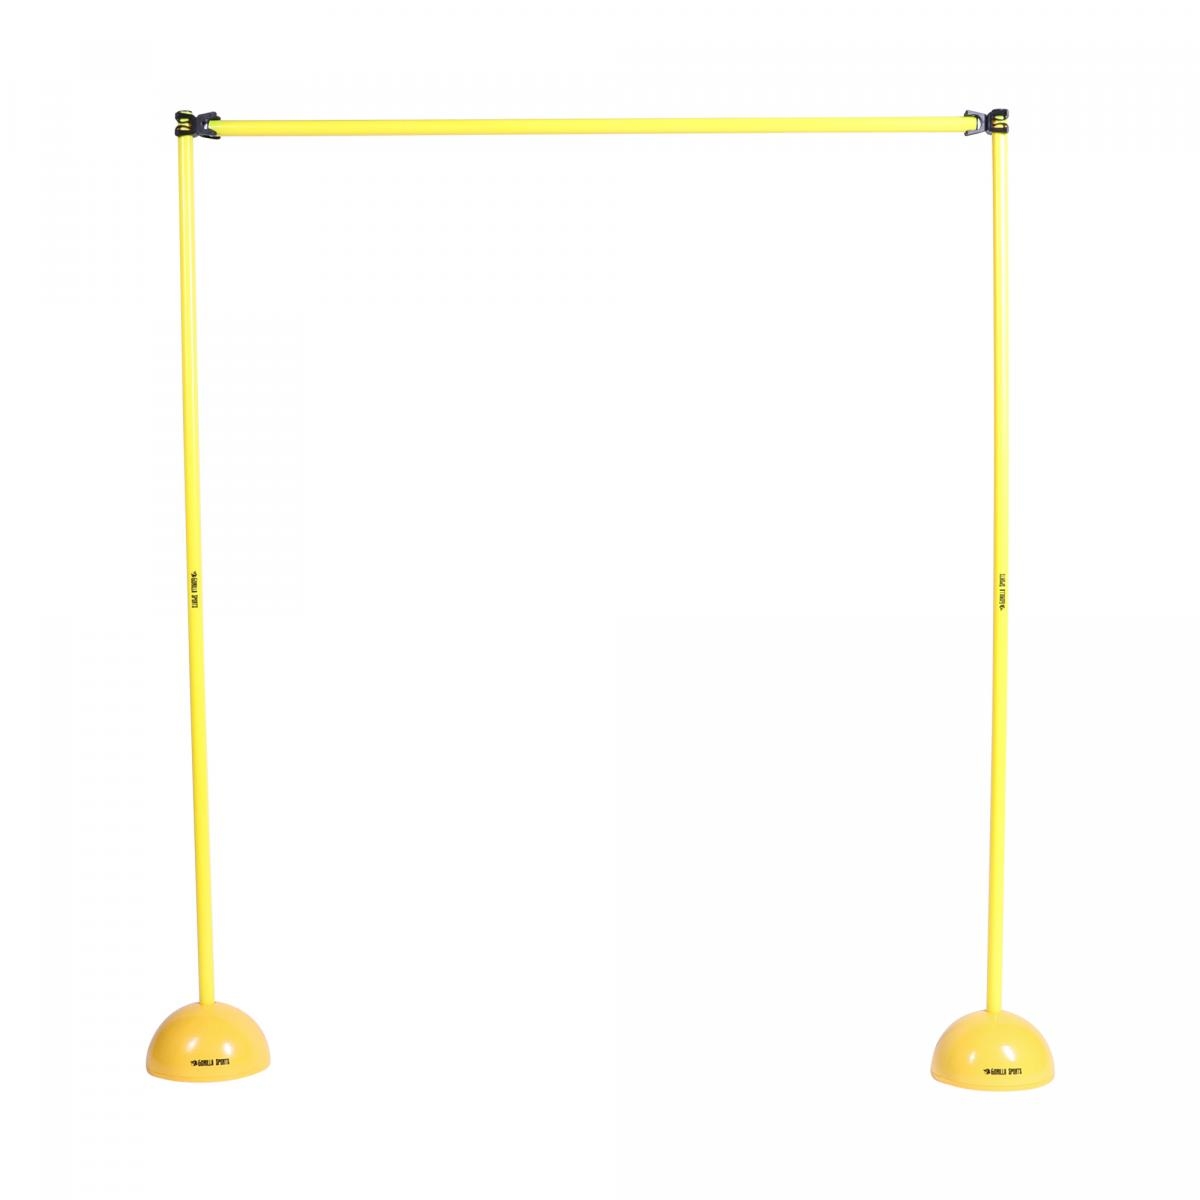 Sprungstangen-Set gelb 3 Stangen 120 cm, 2 Vollgummi-Standfüße, 2 Leiterhürden 